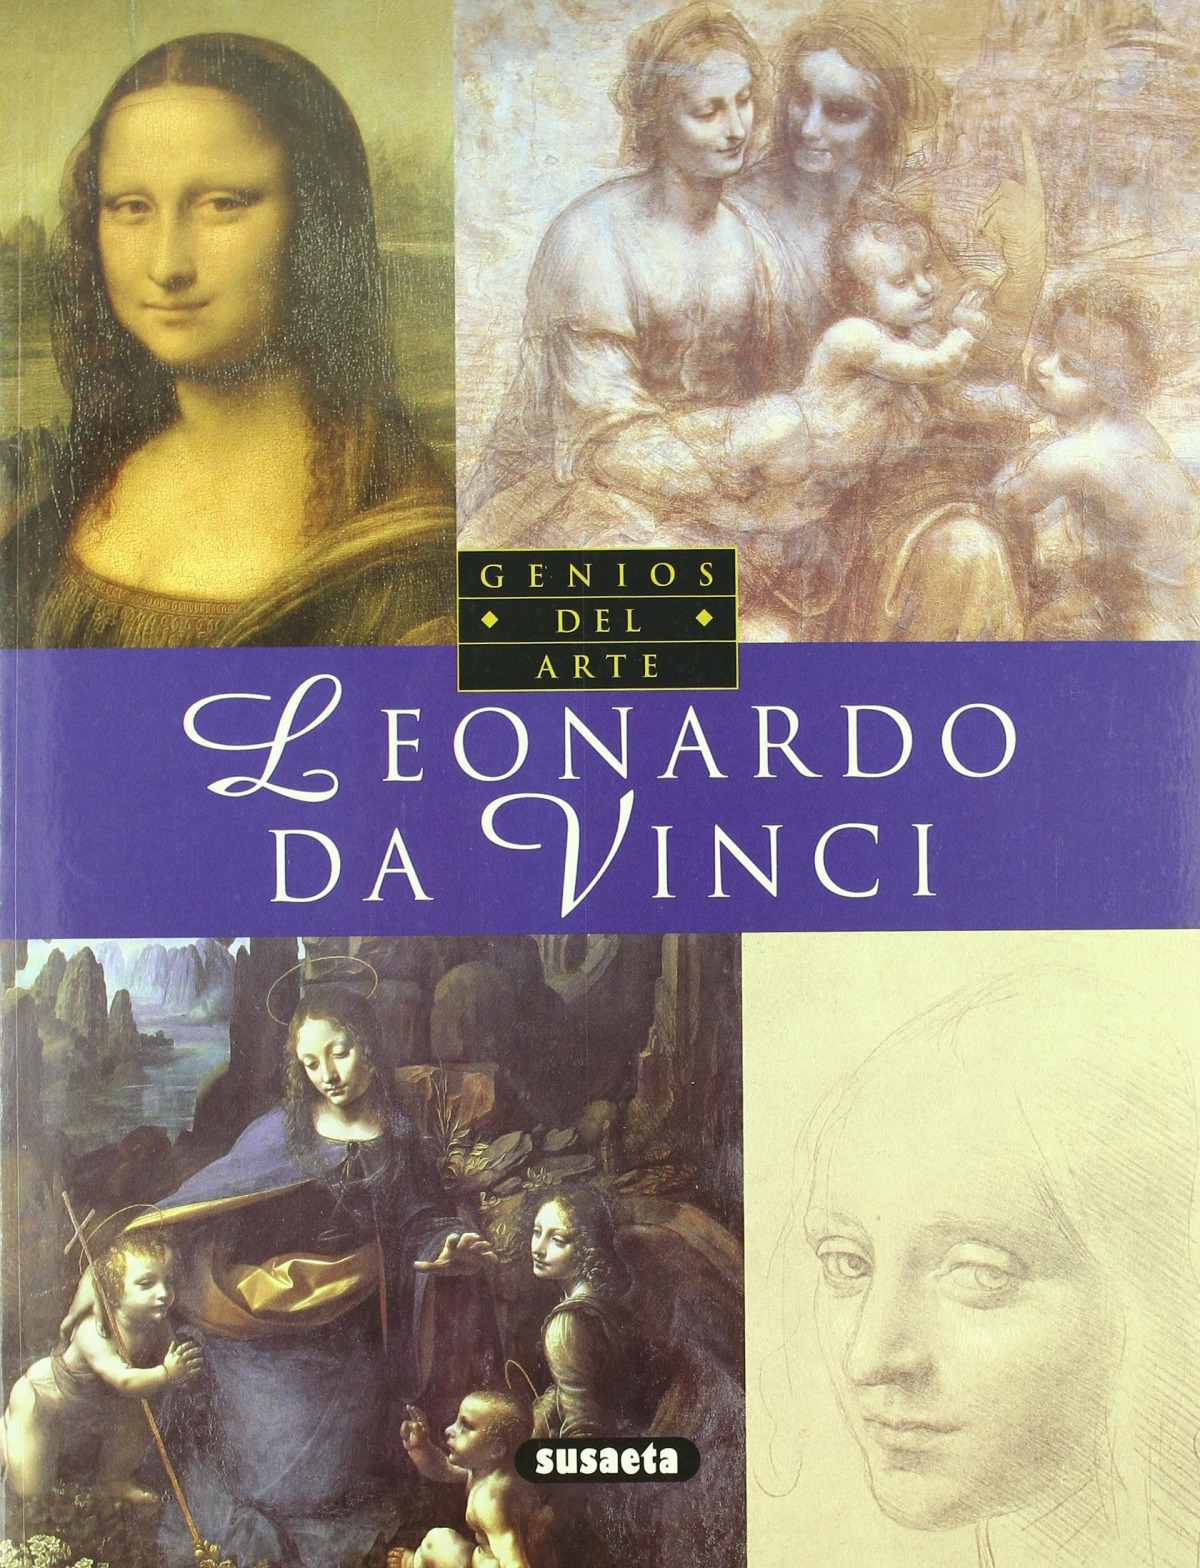 Leonardo da vinci(susaeta) genios de la pintura - García Sánchez, Laura